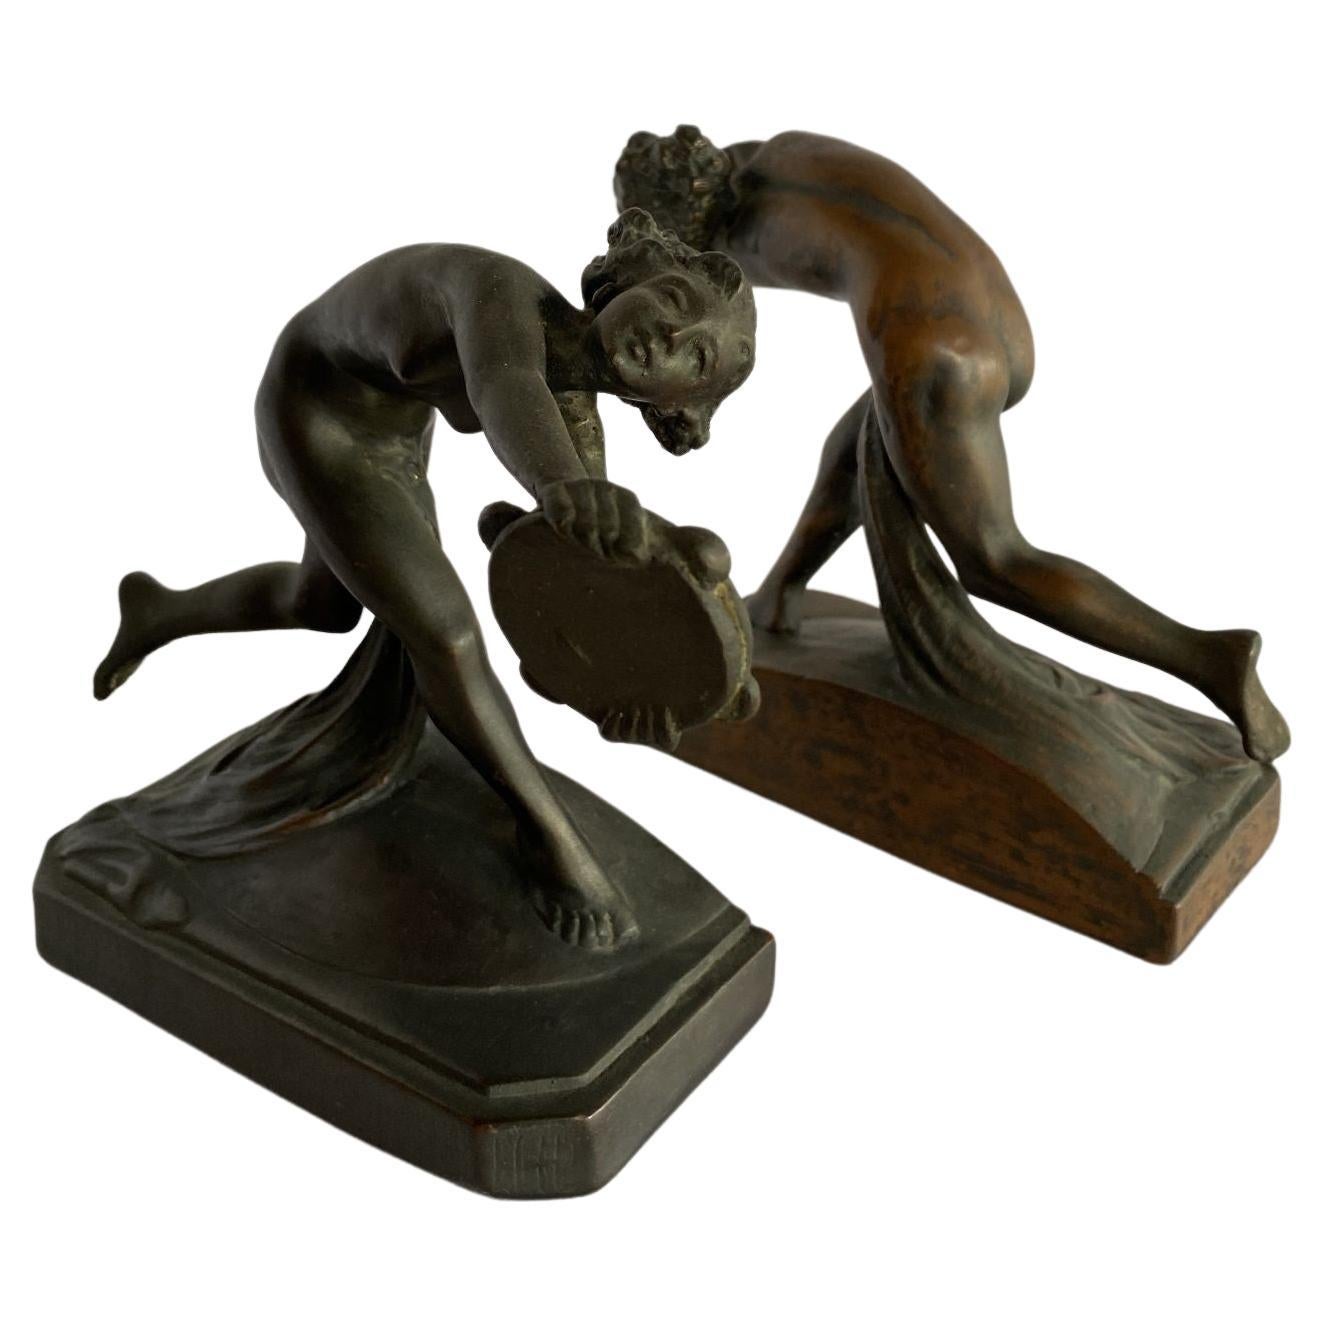 Paire de serre-livres Art Nouveau en bronze coulé représentant une nymphes féminine nue